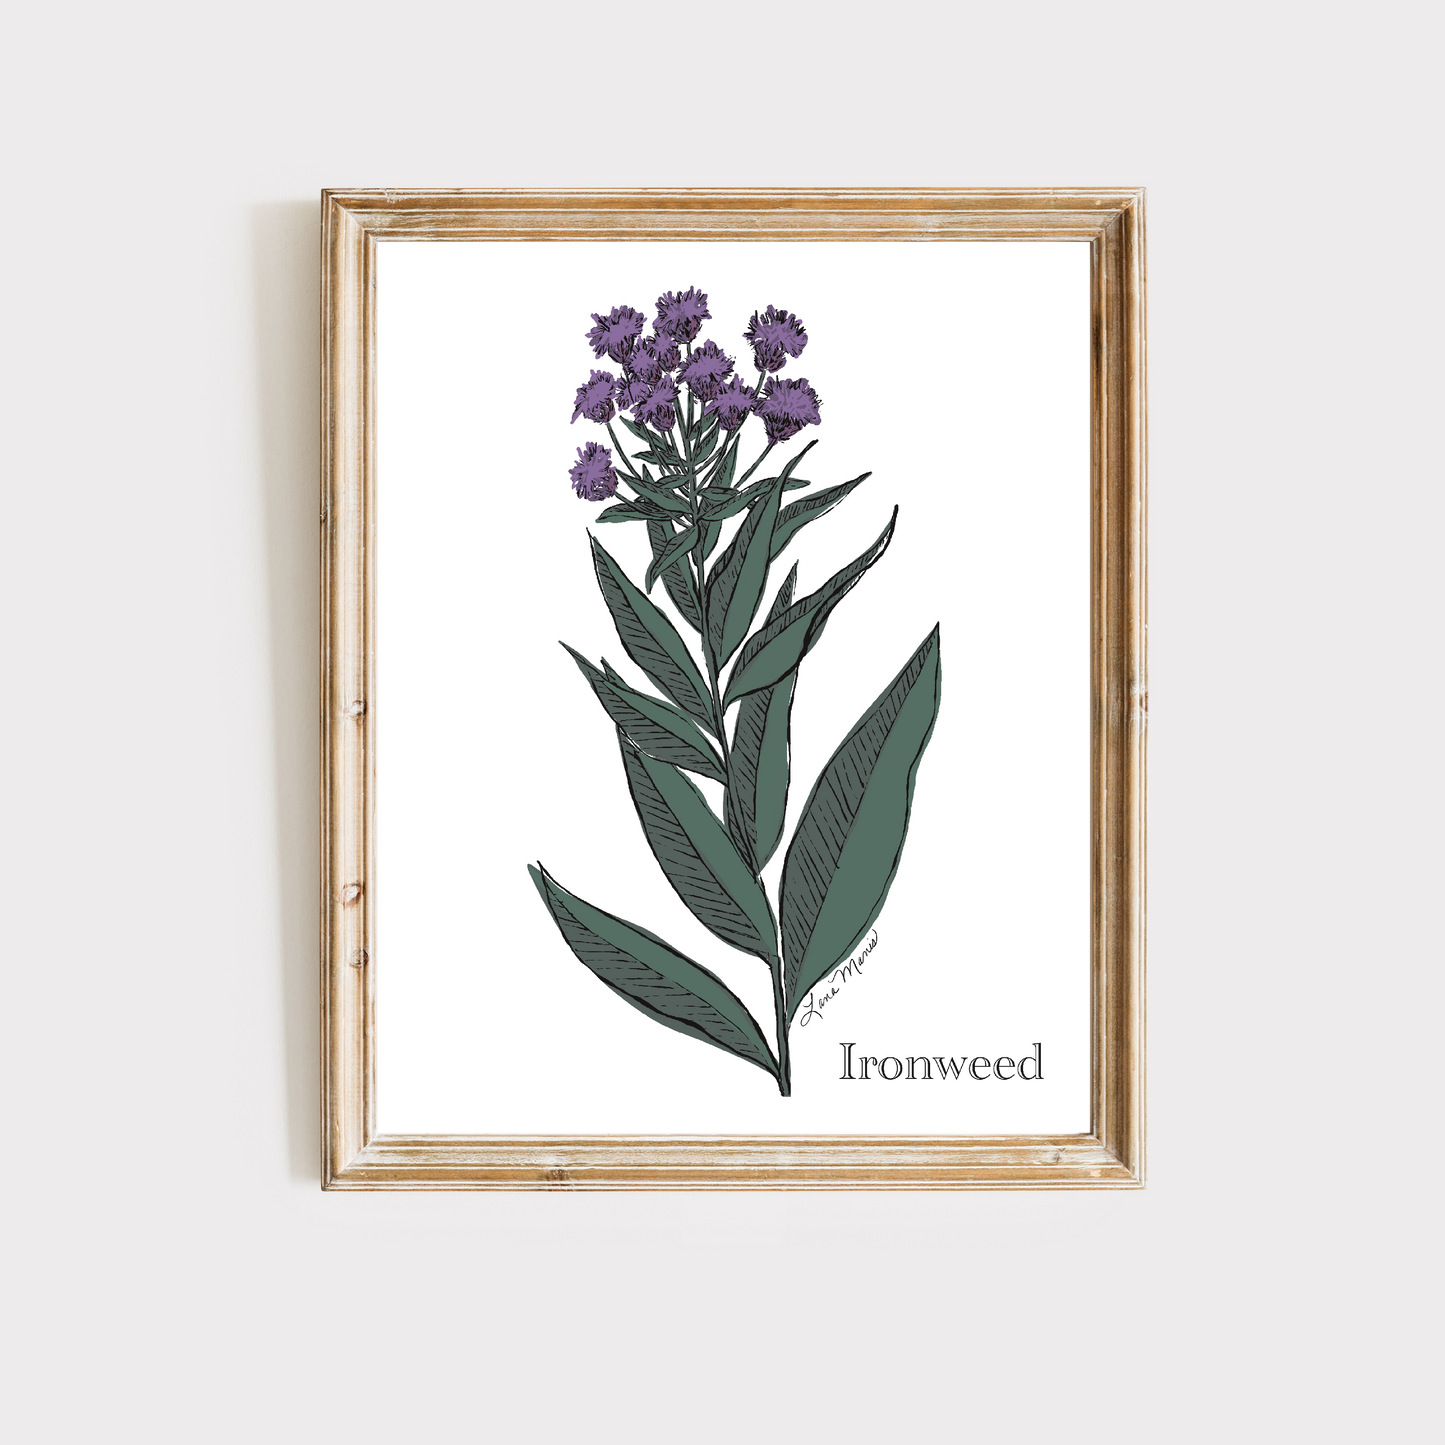 Ironweed Botanical Art Print - 3 Designs